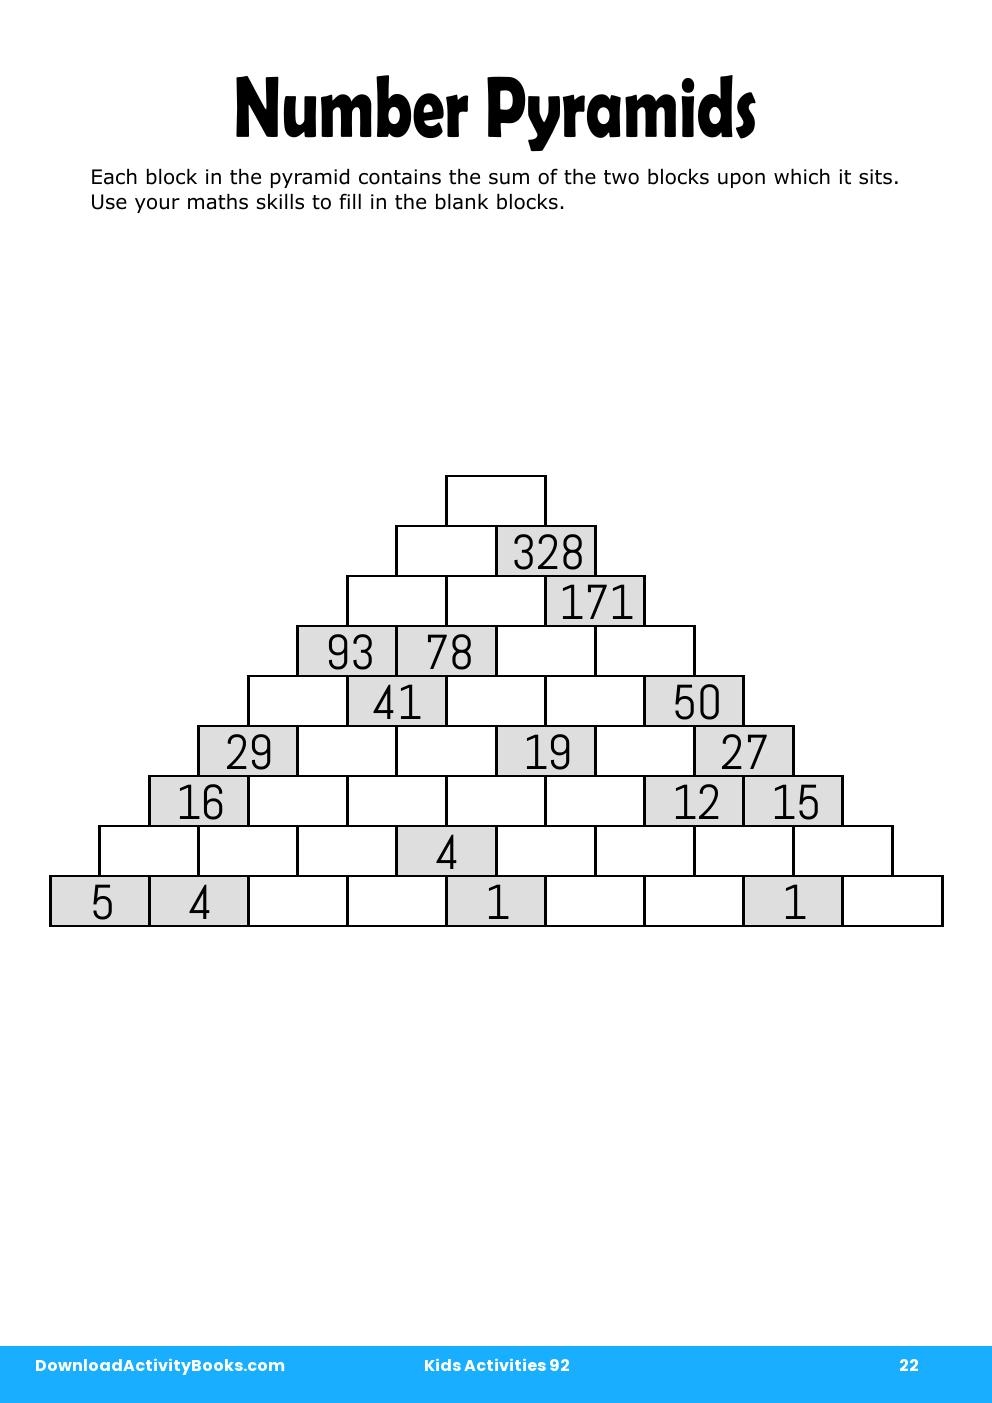 Number Pyramids in Kids Activities 92